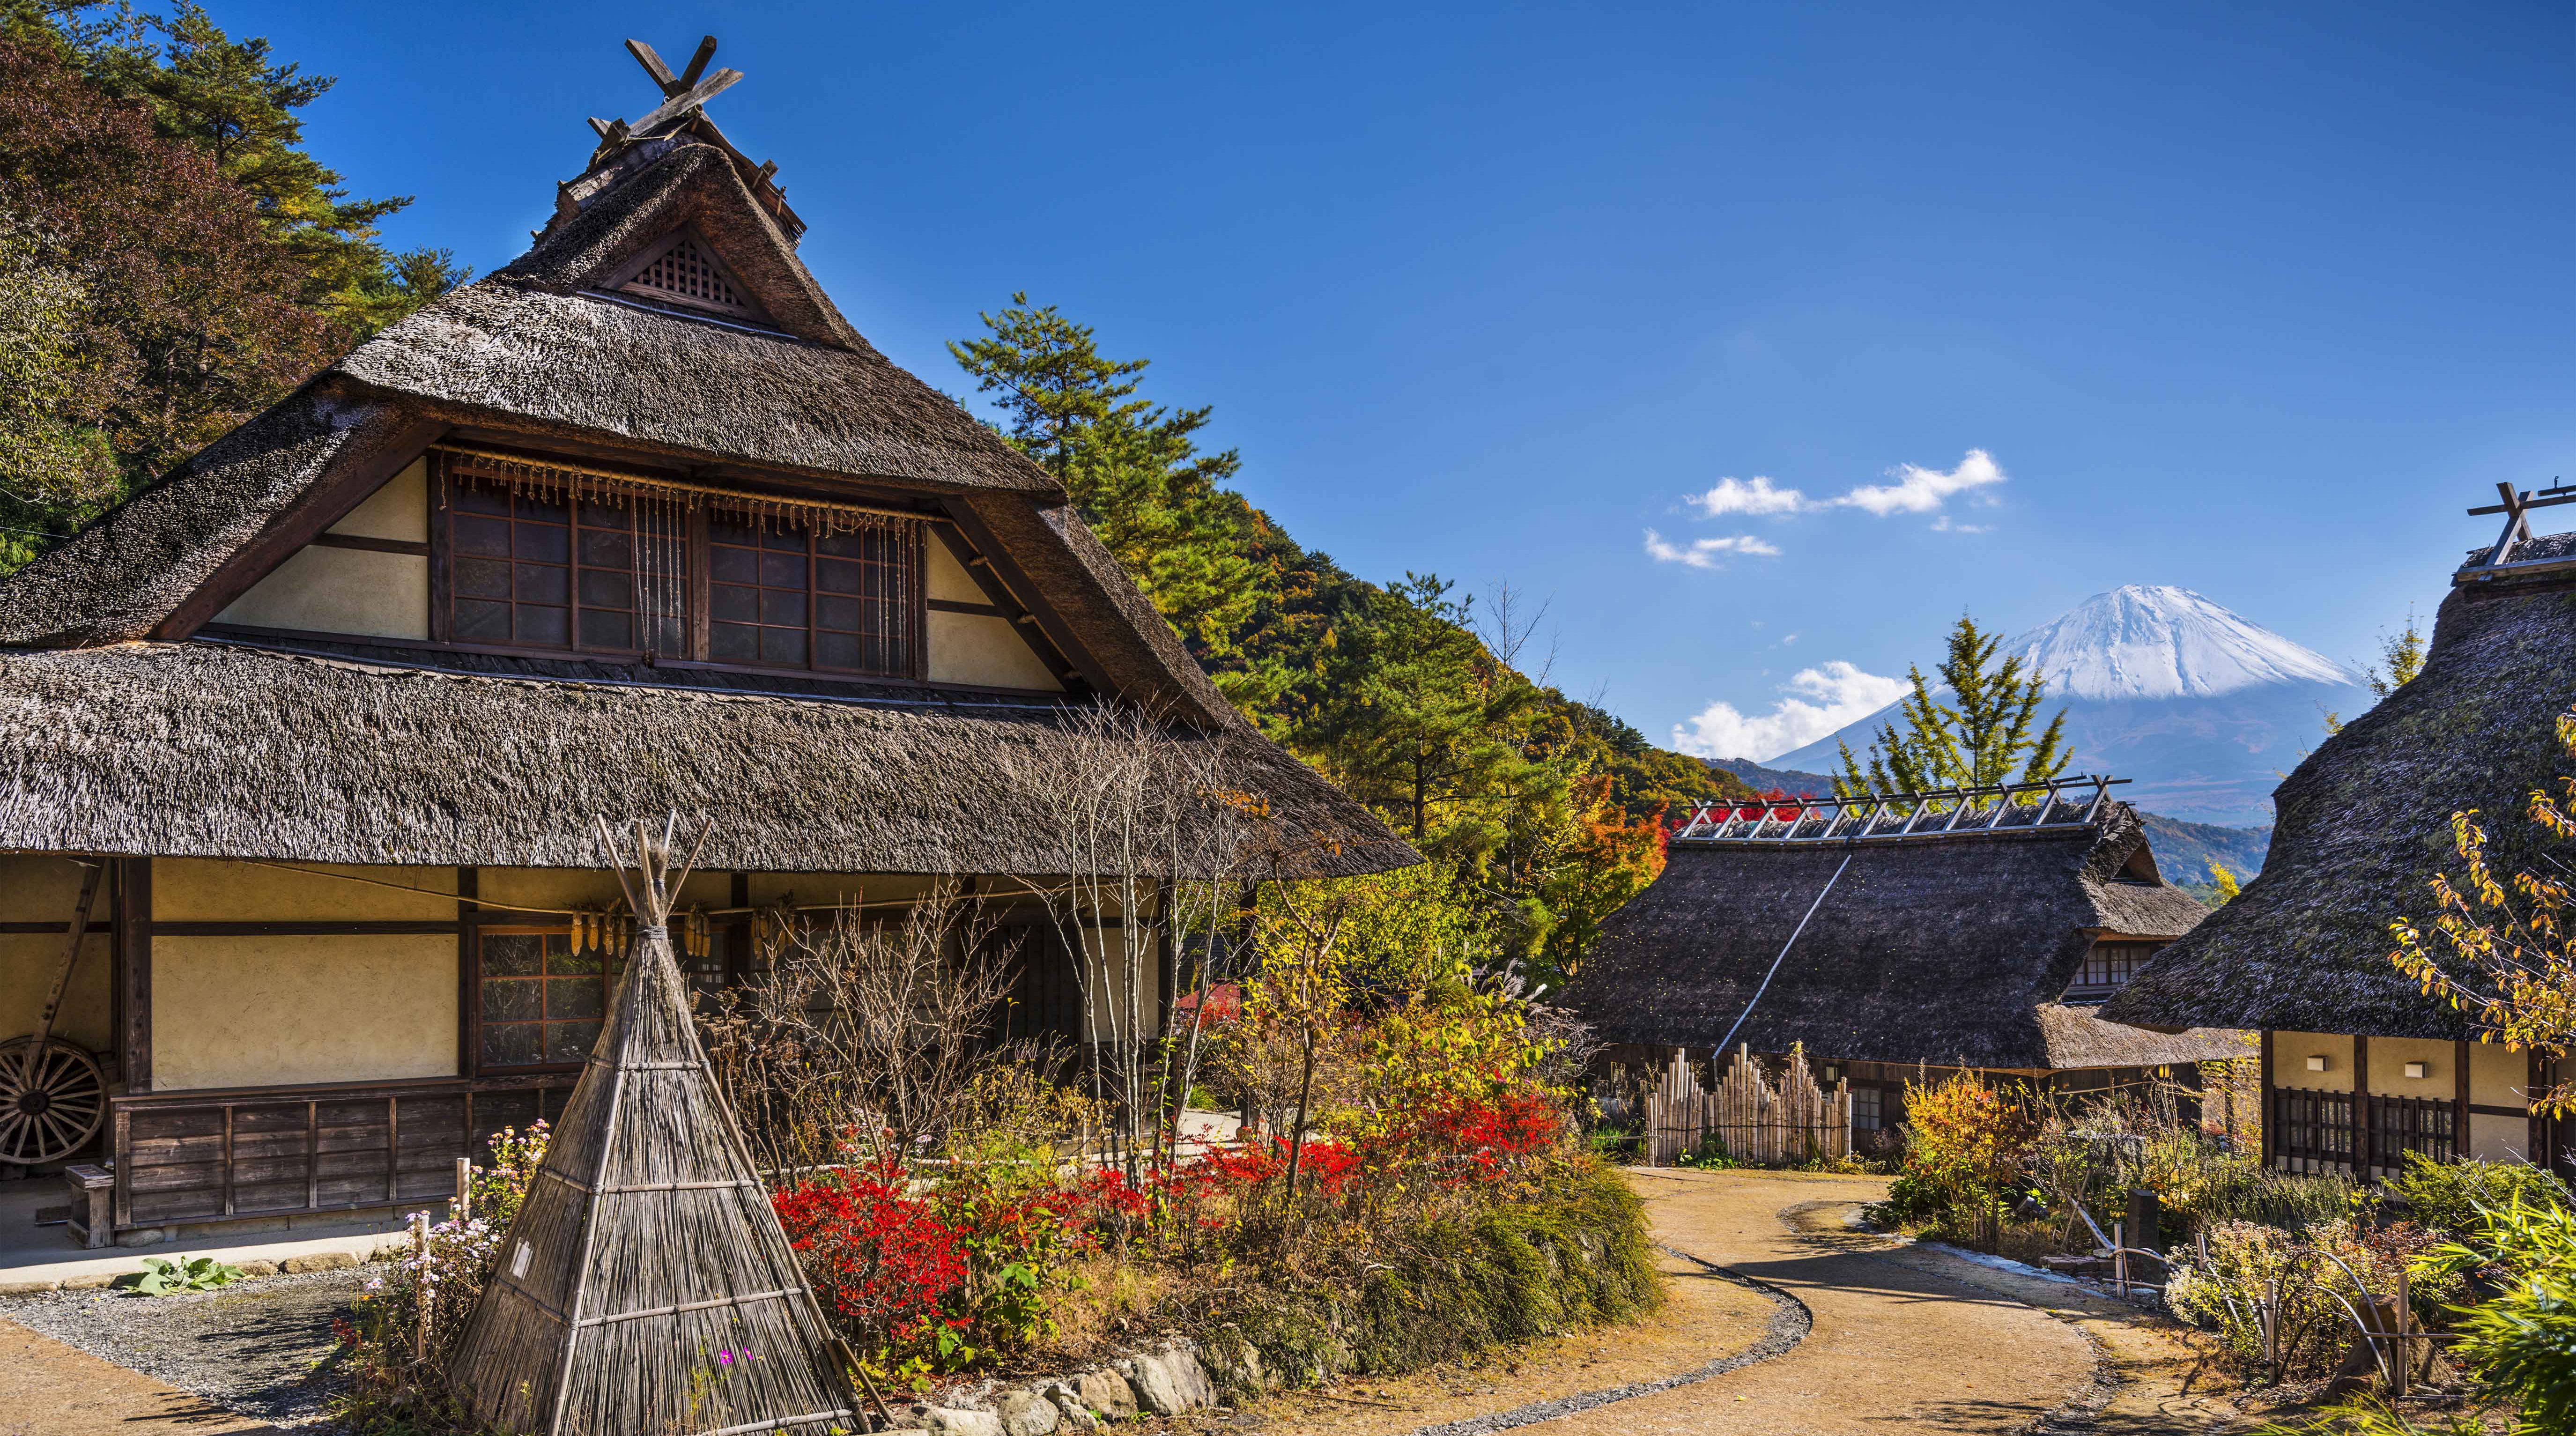 Iyashi No Sato Village and Mt. Fuji, traditional japan